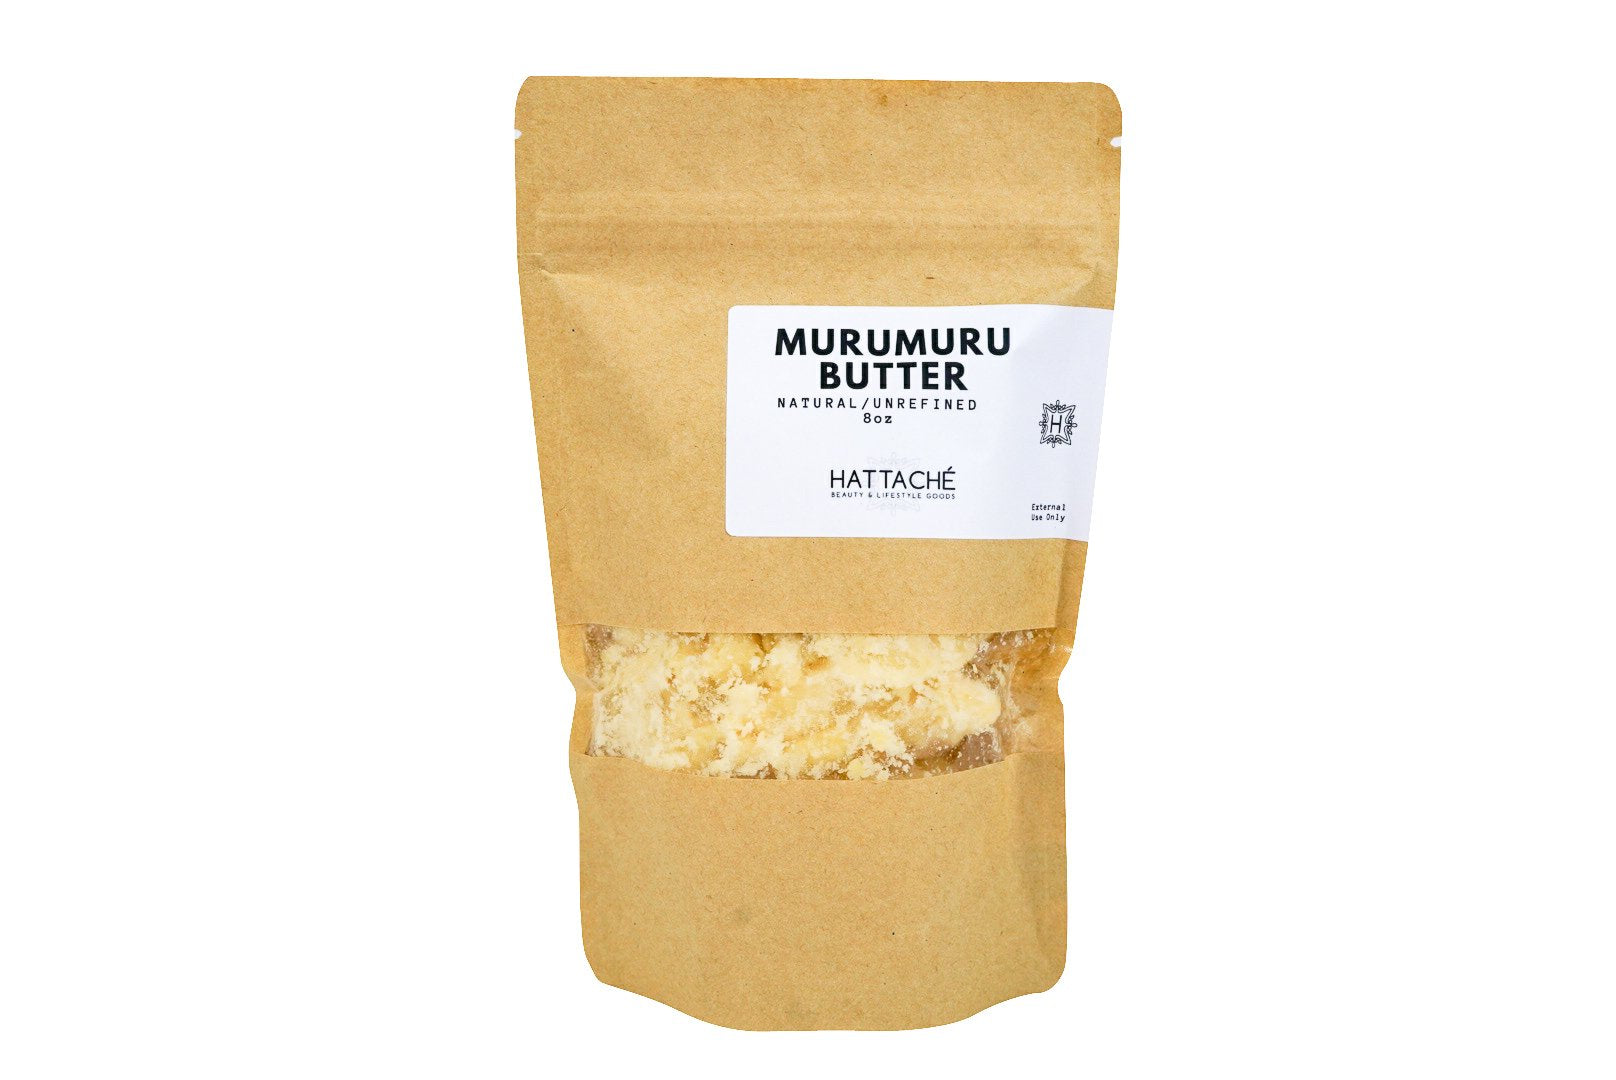 Hattache Natural Butter for Hair + Skin - Murumuru Butter